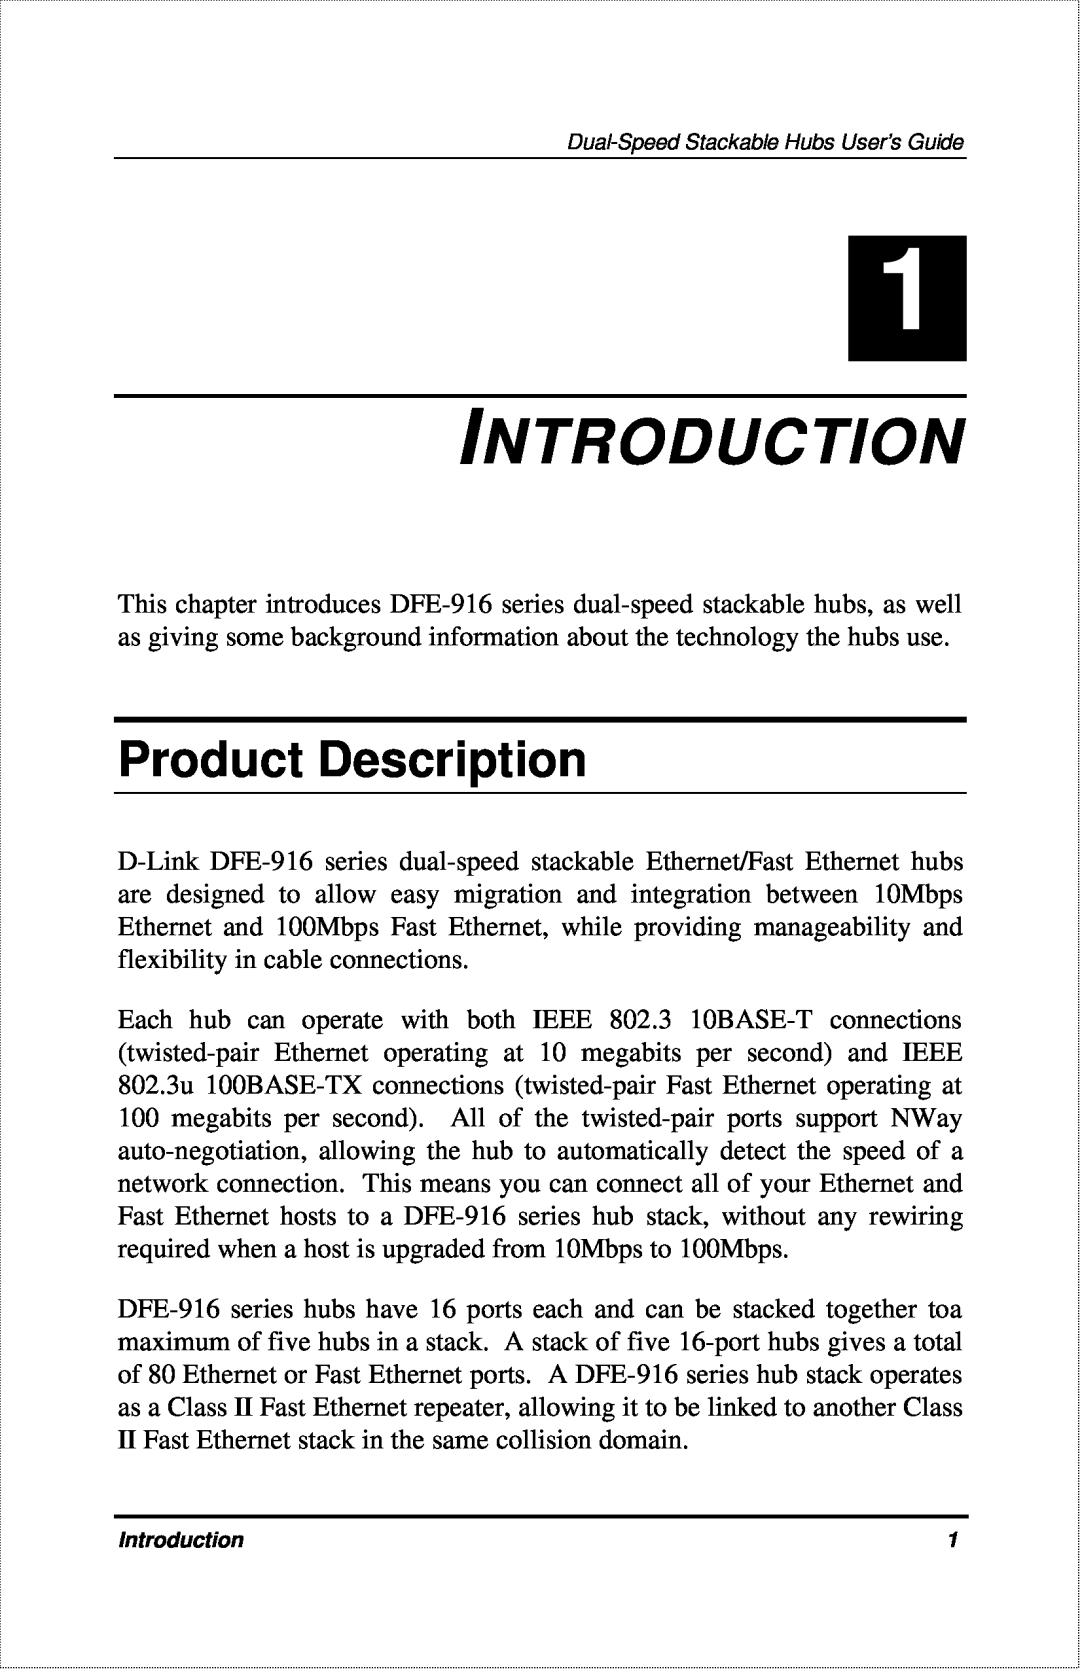 D-Link DFE-916X manual Introduction, Product Description 